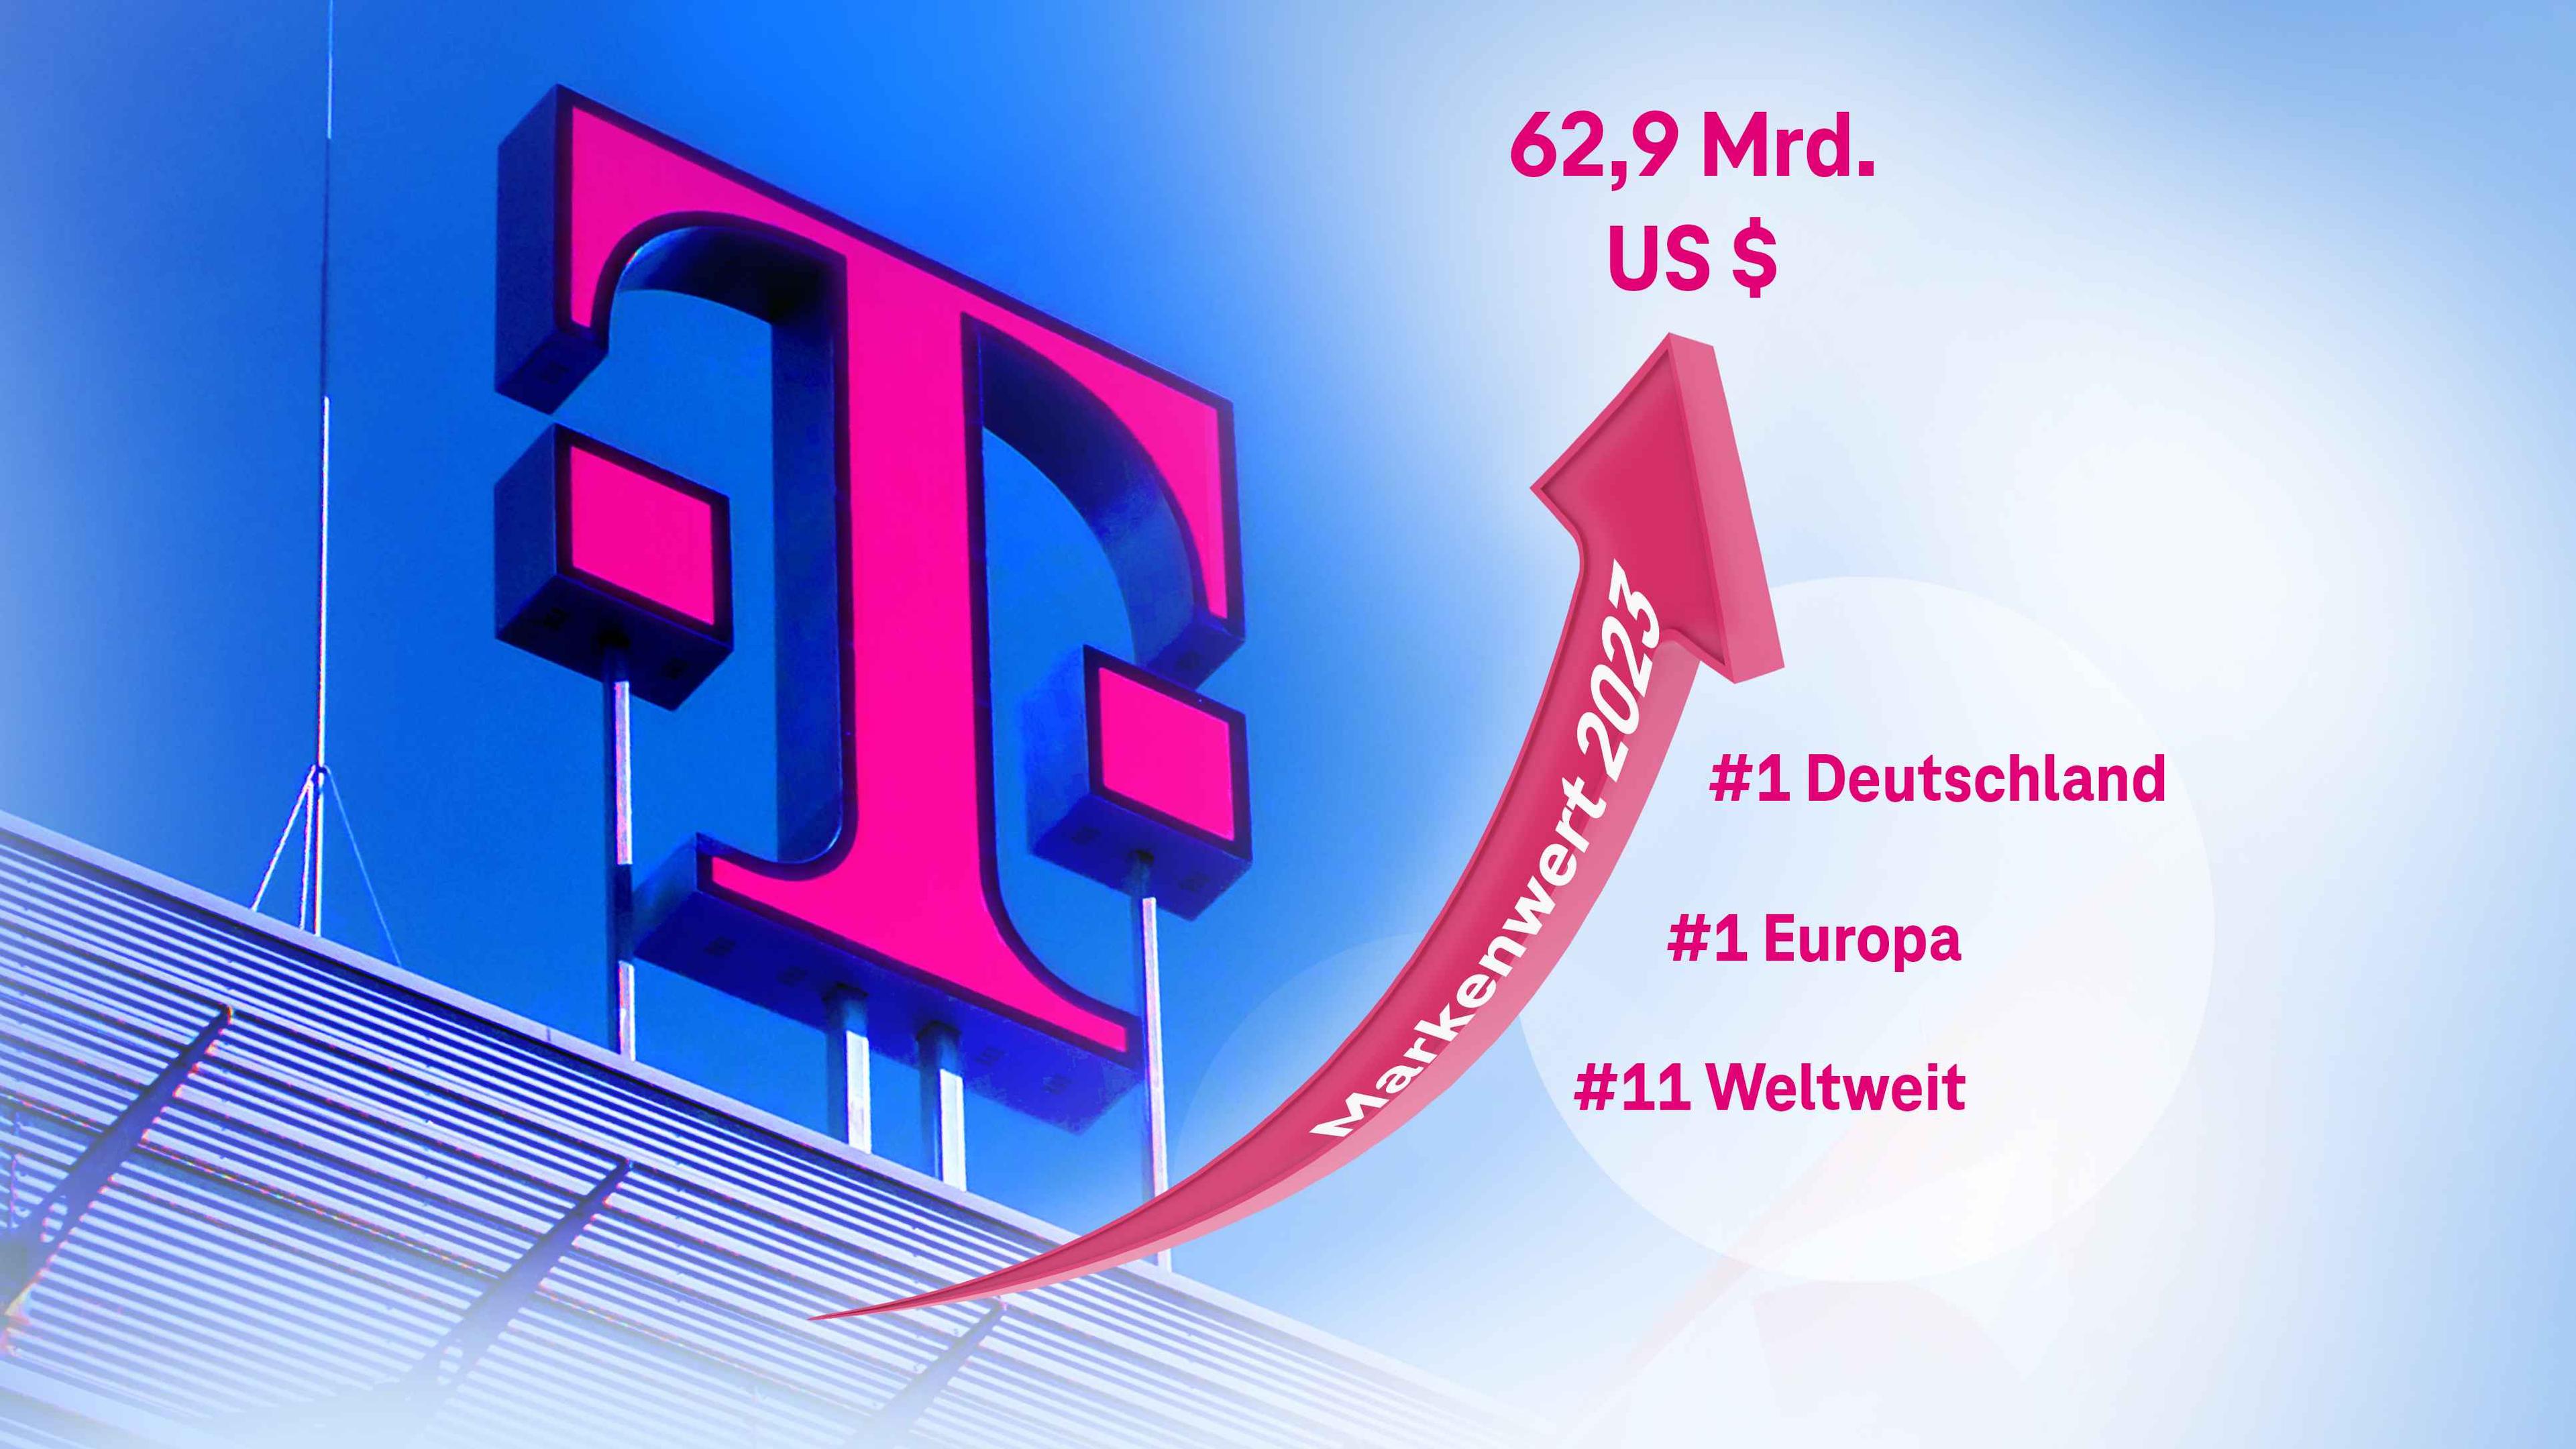 Mit einem Markenwert von 62,9 Milliarden US-Dollar ist die Deutsche Telekom die wertvollste Marke Europas und rangiert weltweit auf dem elften Rang - 